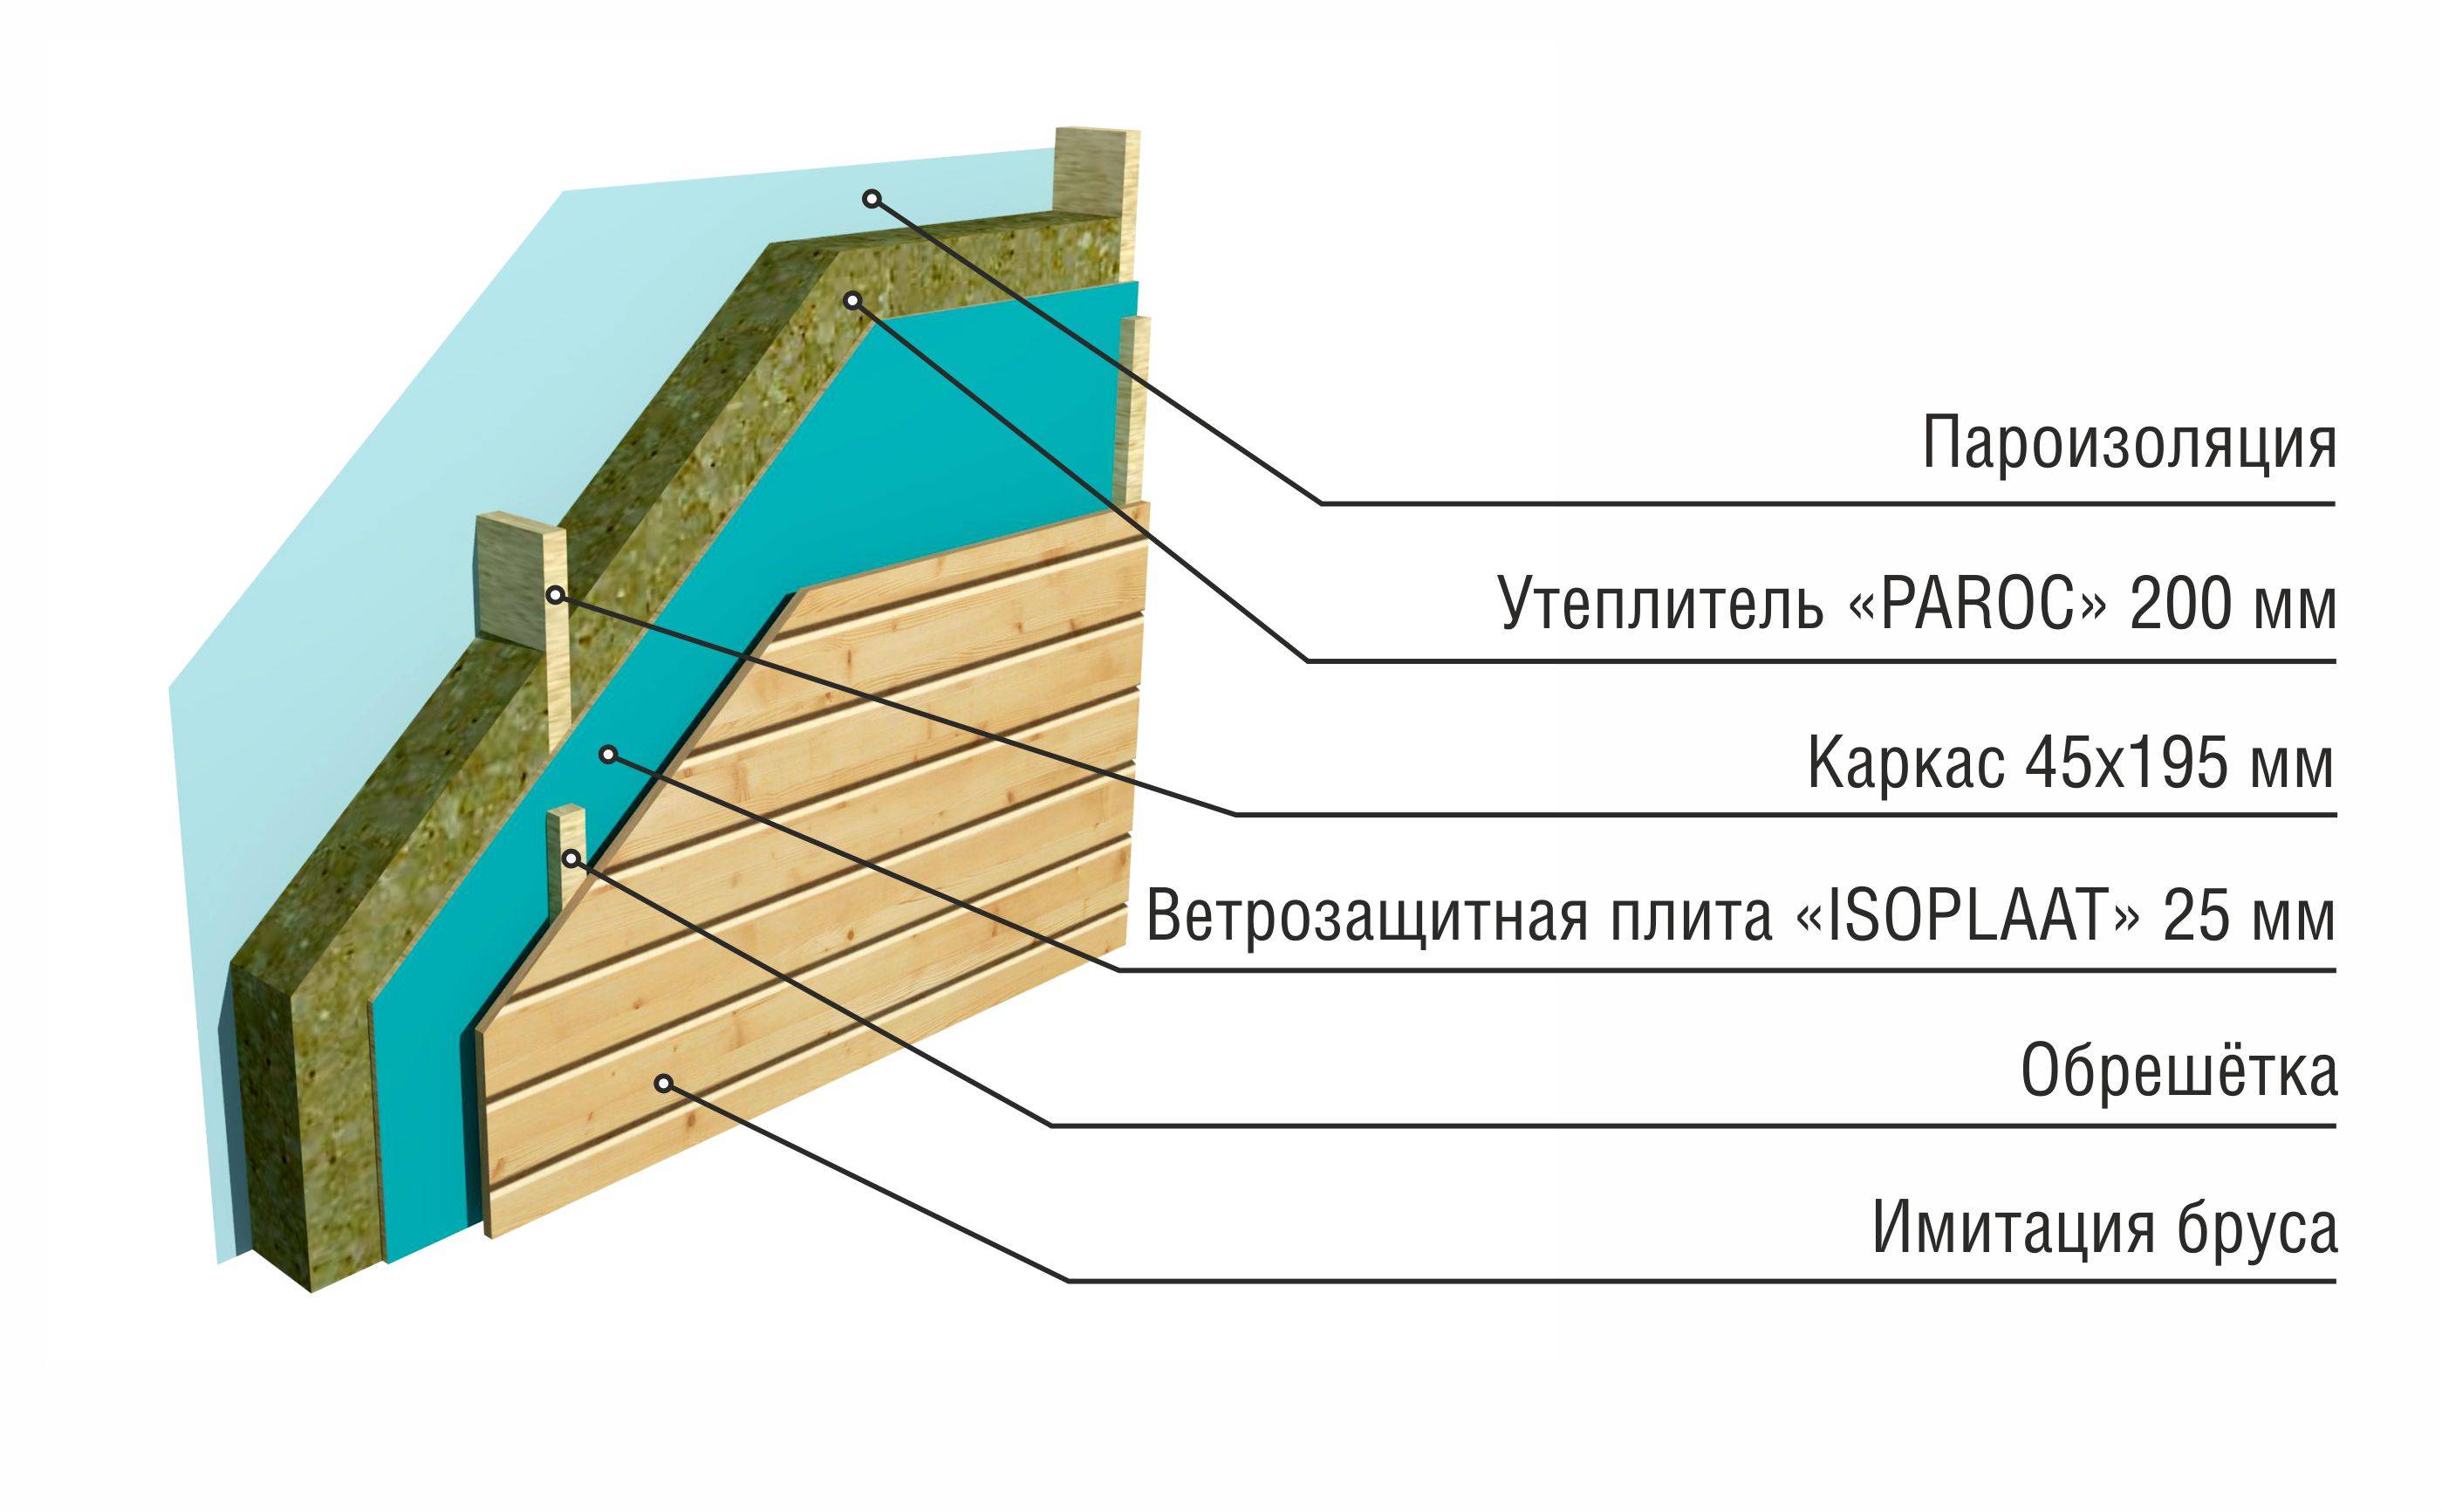 Утепление стен плитами мдвп – технология теплоизоляции